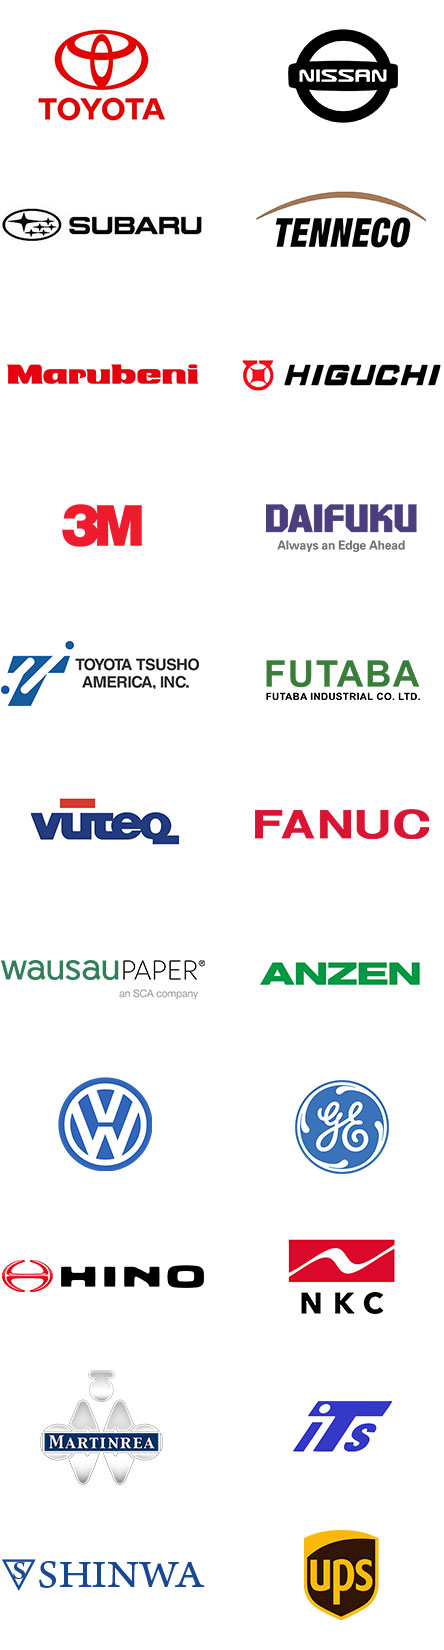 automotive manufacturer logos